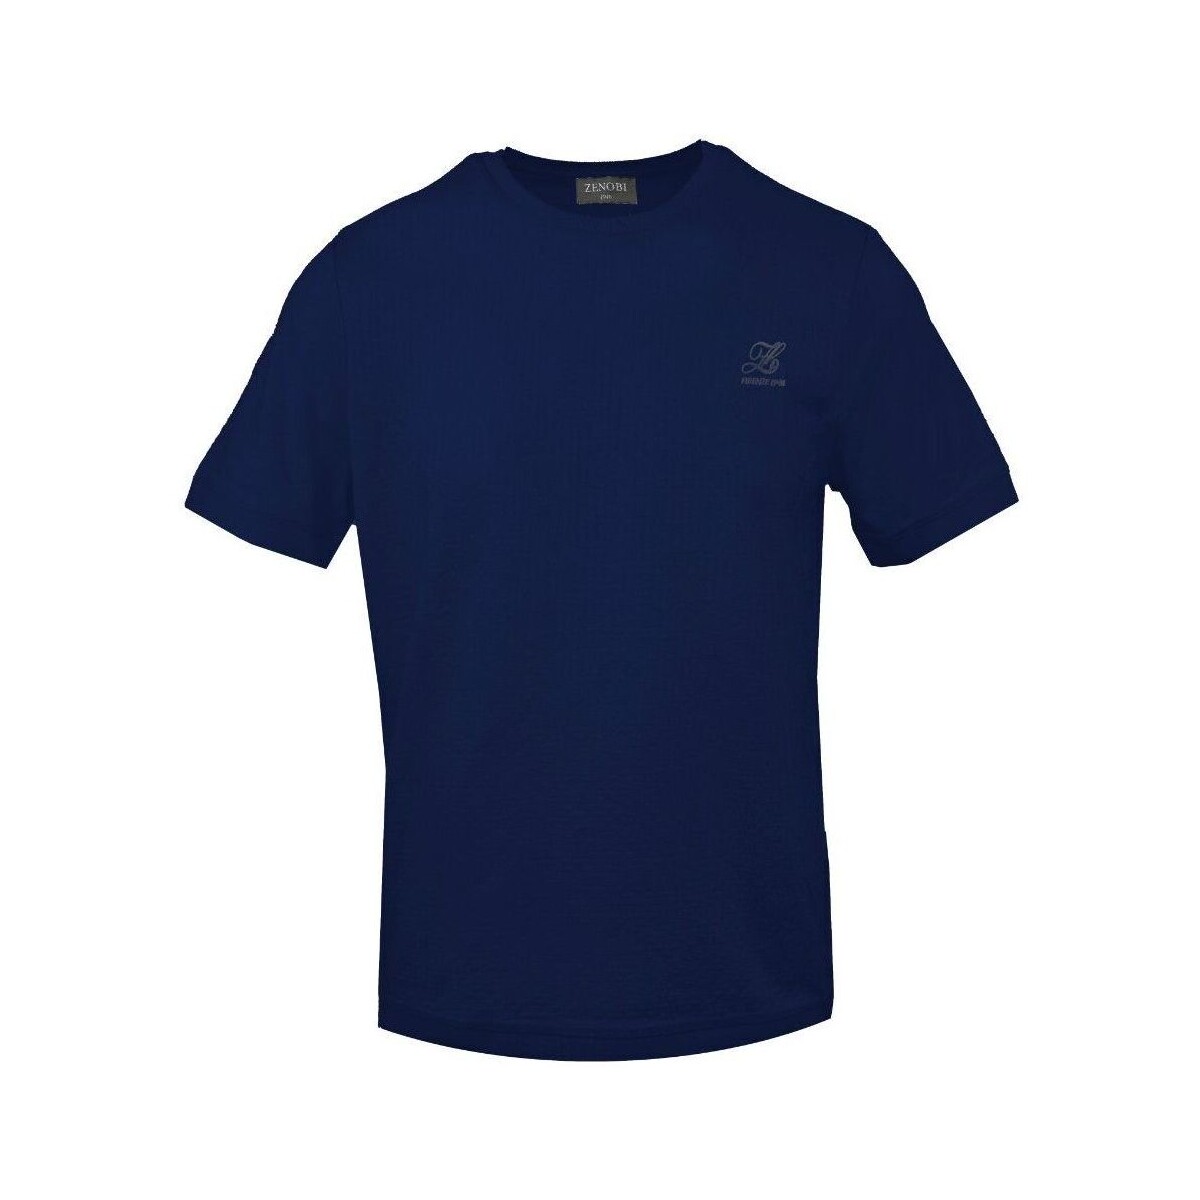 Textiel Heren T-shirts korte mouwen Ferrari & Zenobi - tshmz Blauw